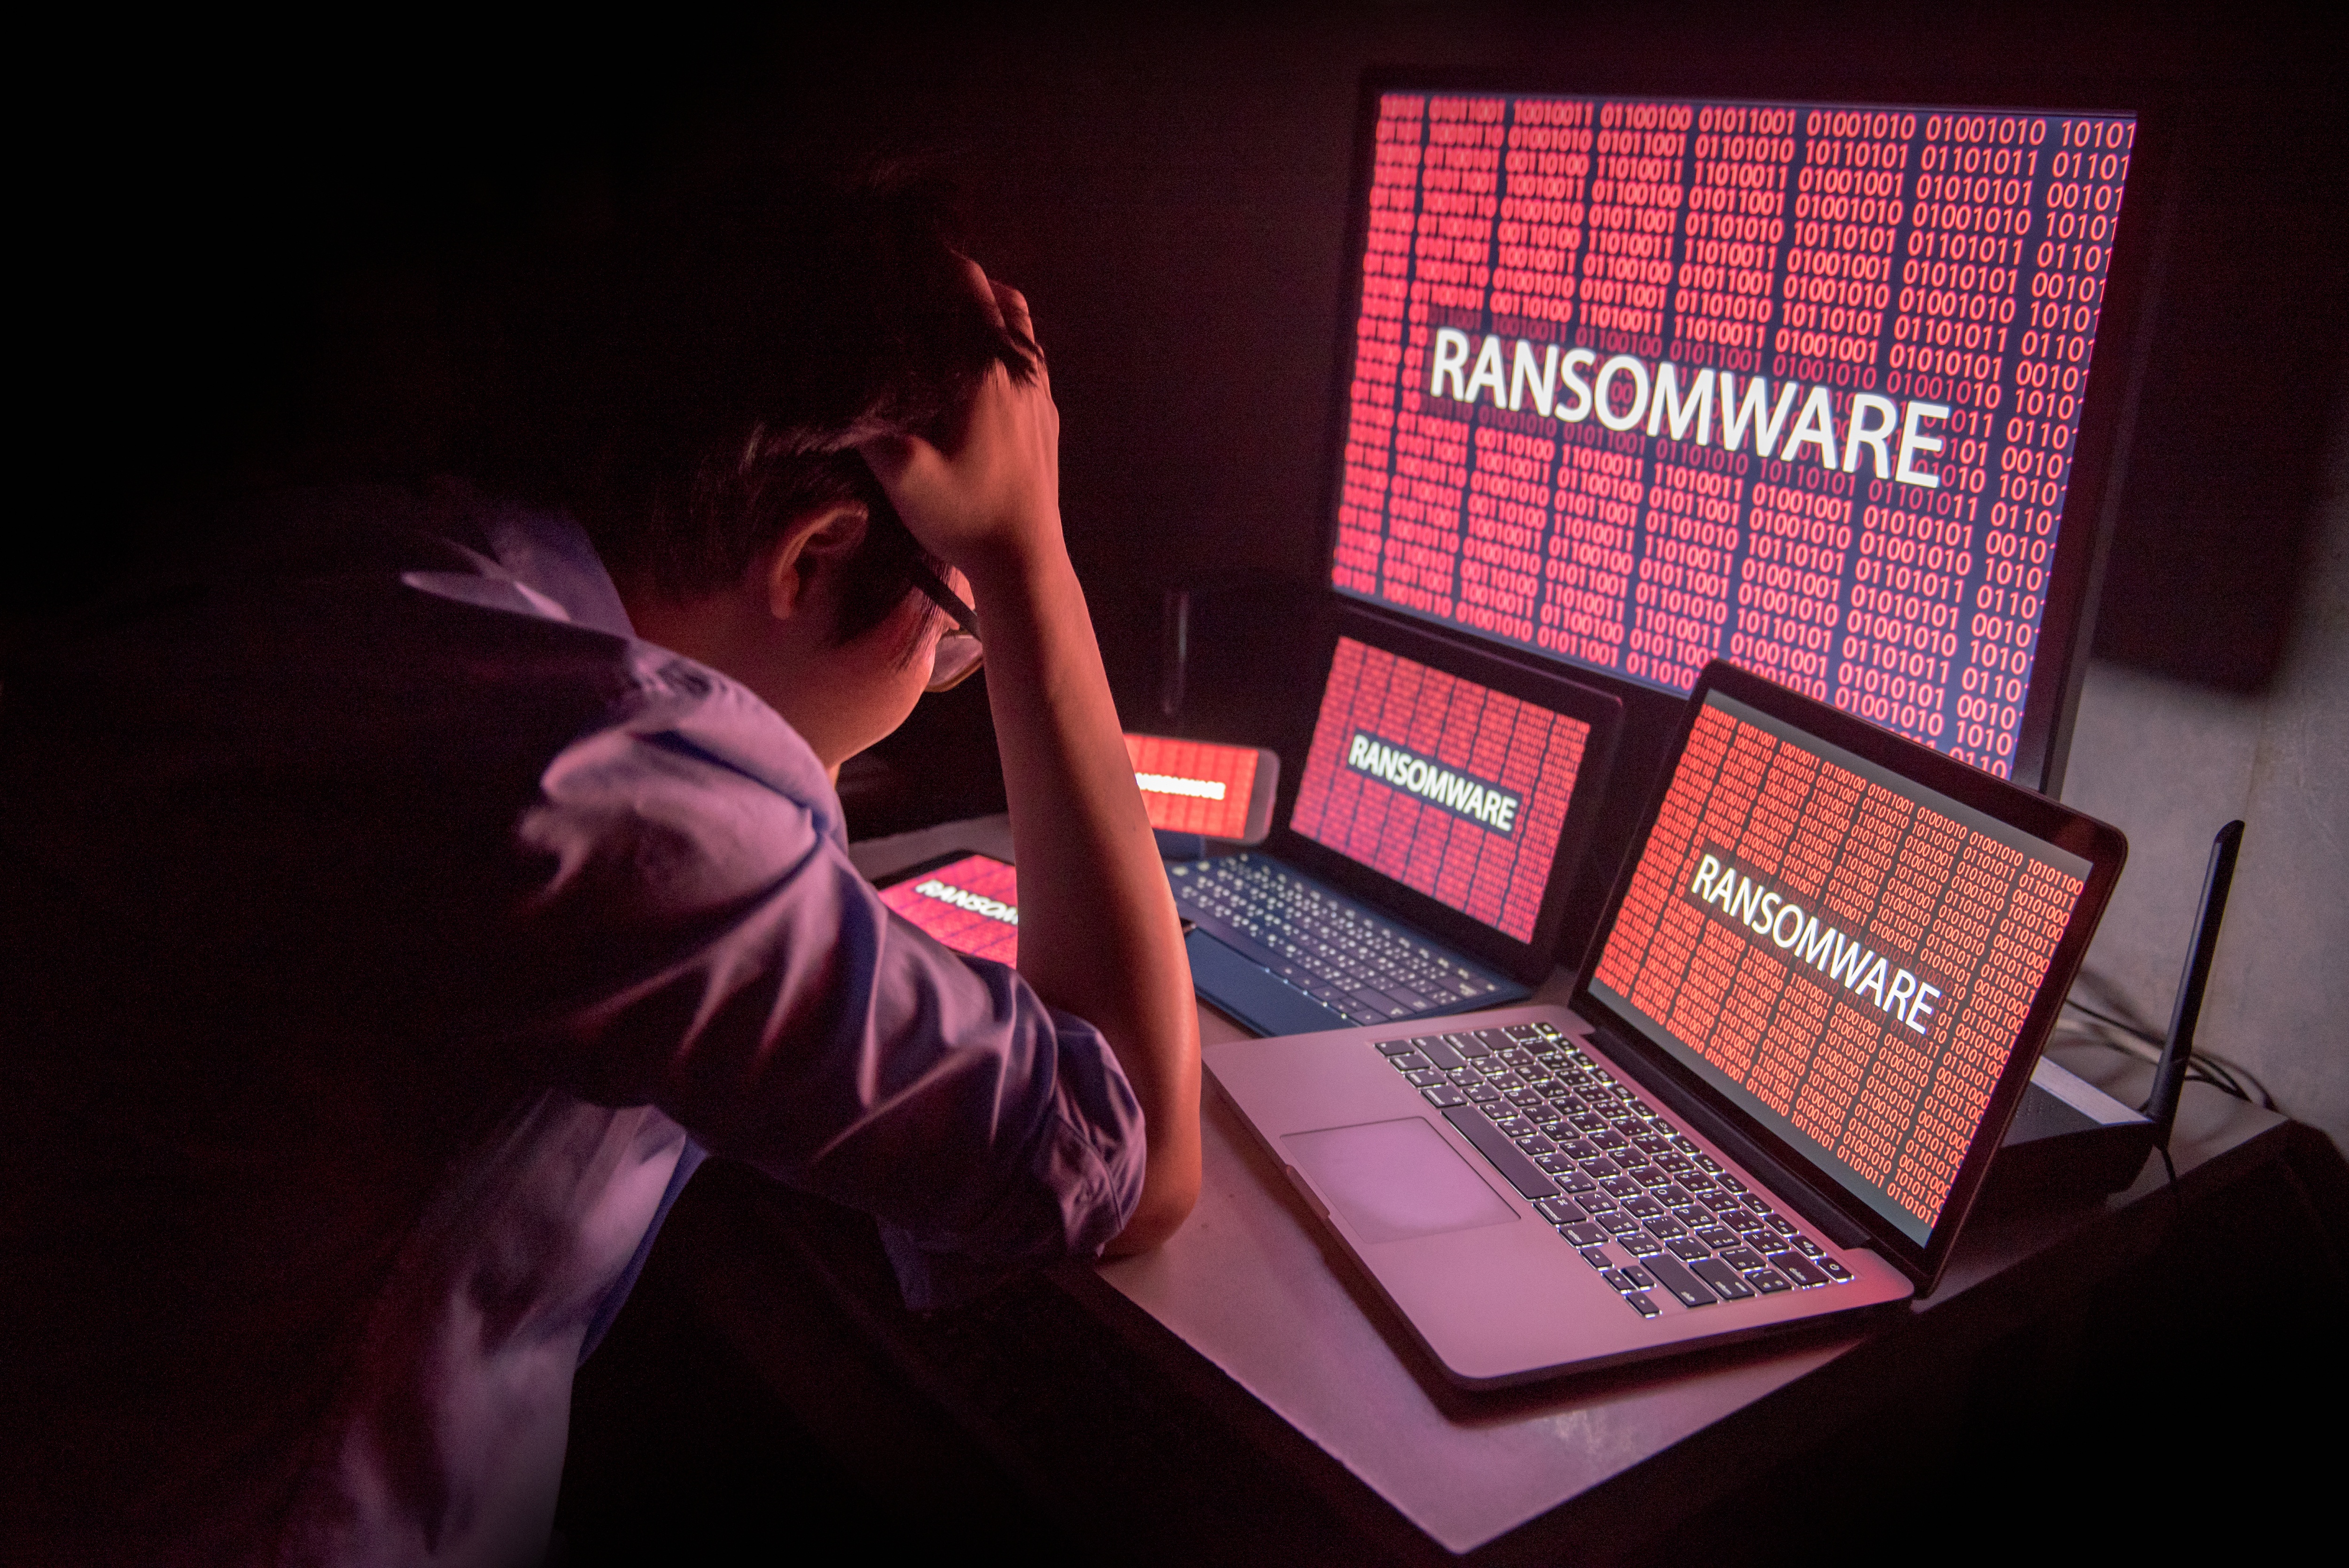 Le groupe de hackers NB65, lié à Anonymous, utilise une version modifiée du malware russe Conti pour attaquer des entreprises russes. © zephyr_p Adobe Stock